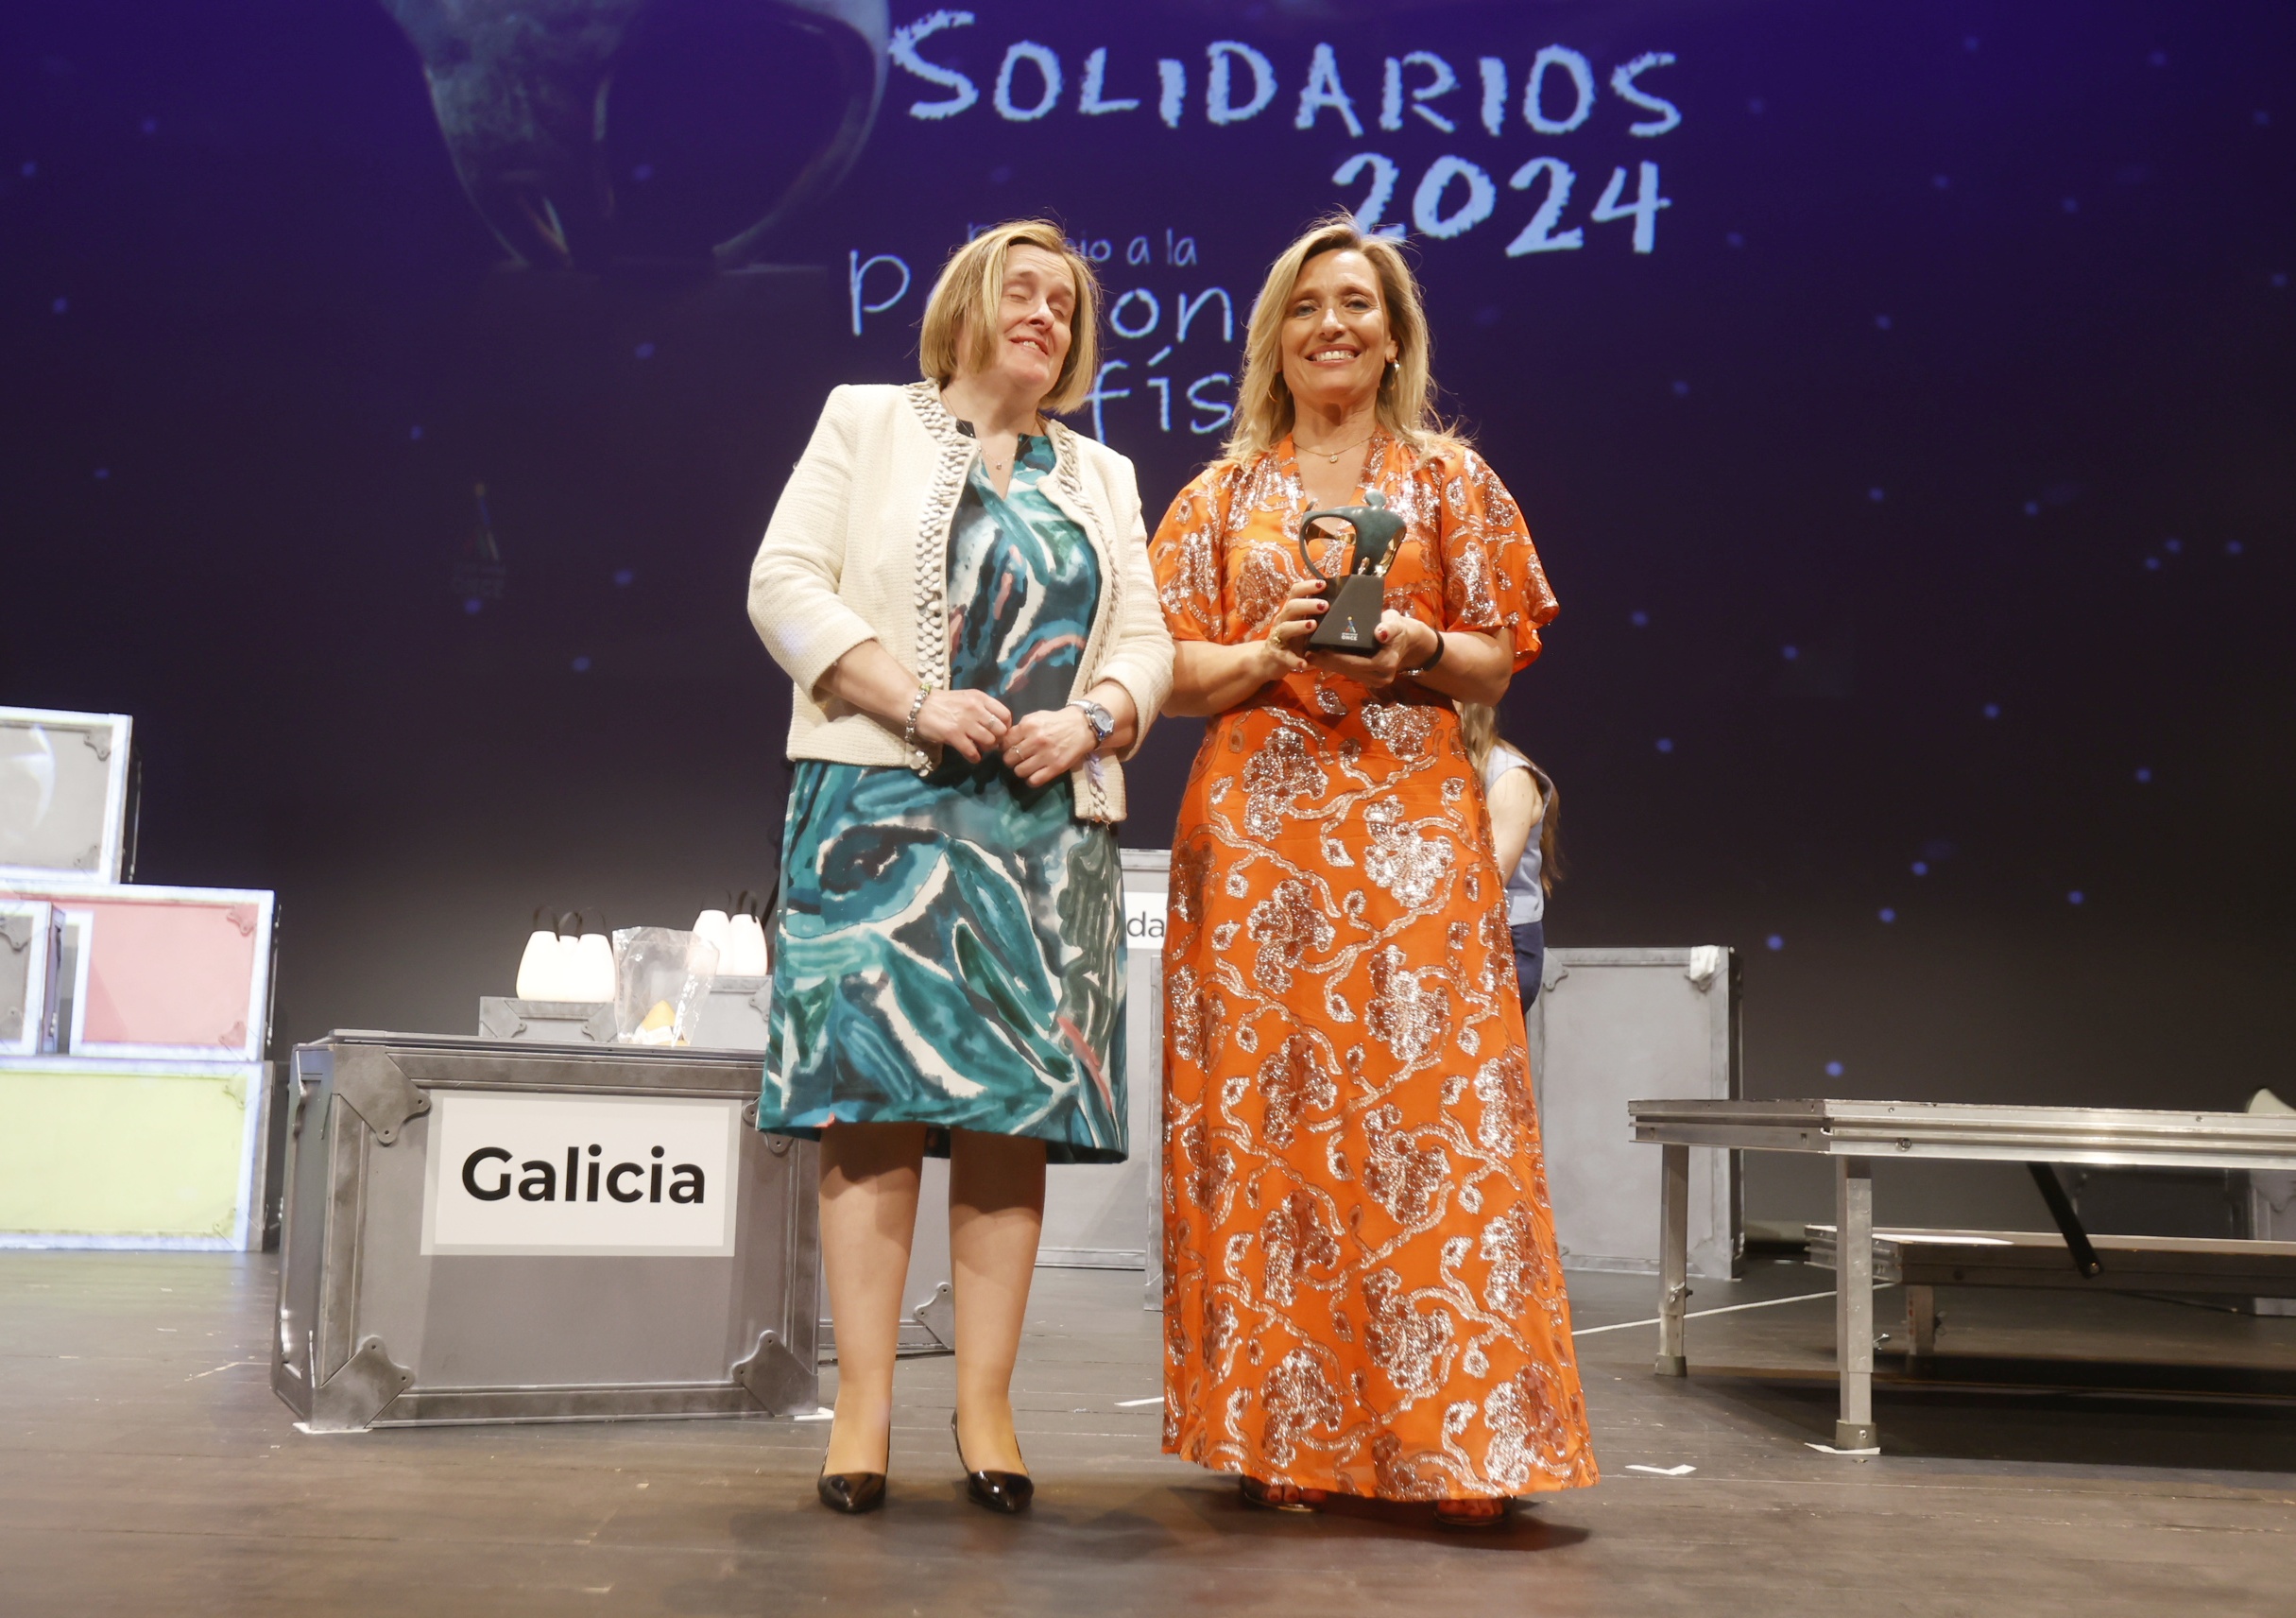 Myriam Garabito recogiendo el Premio Solidario a Persona Física de los Premios Solidarios